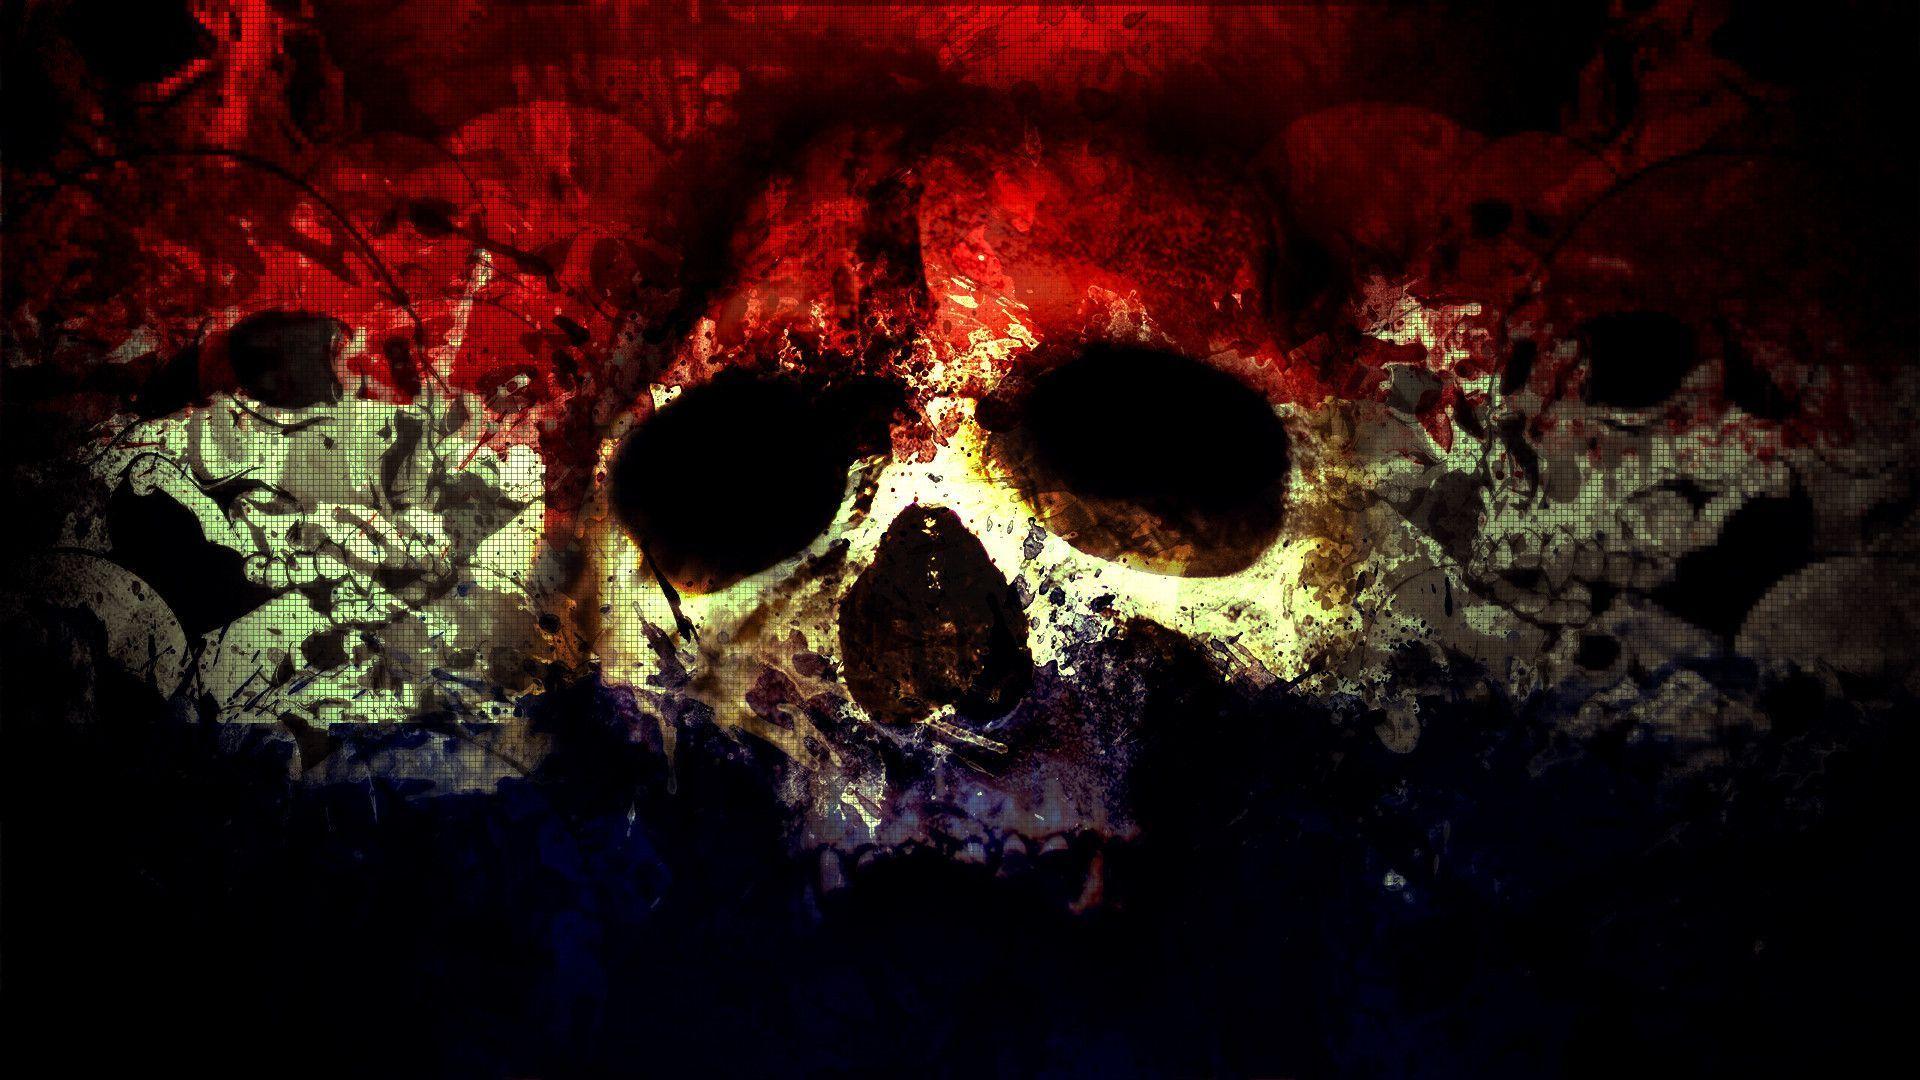 Skull Wallpaper Desktop